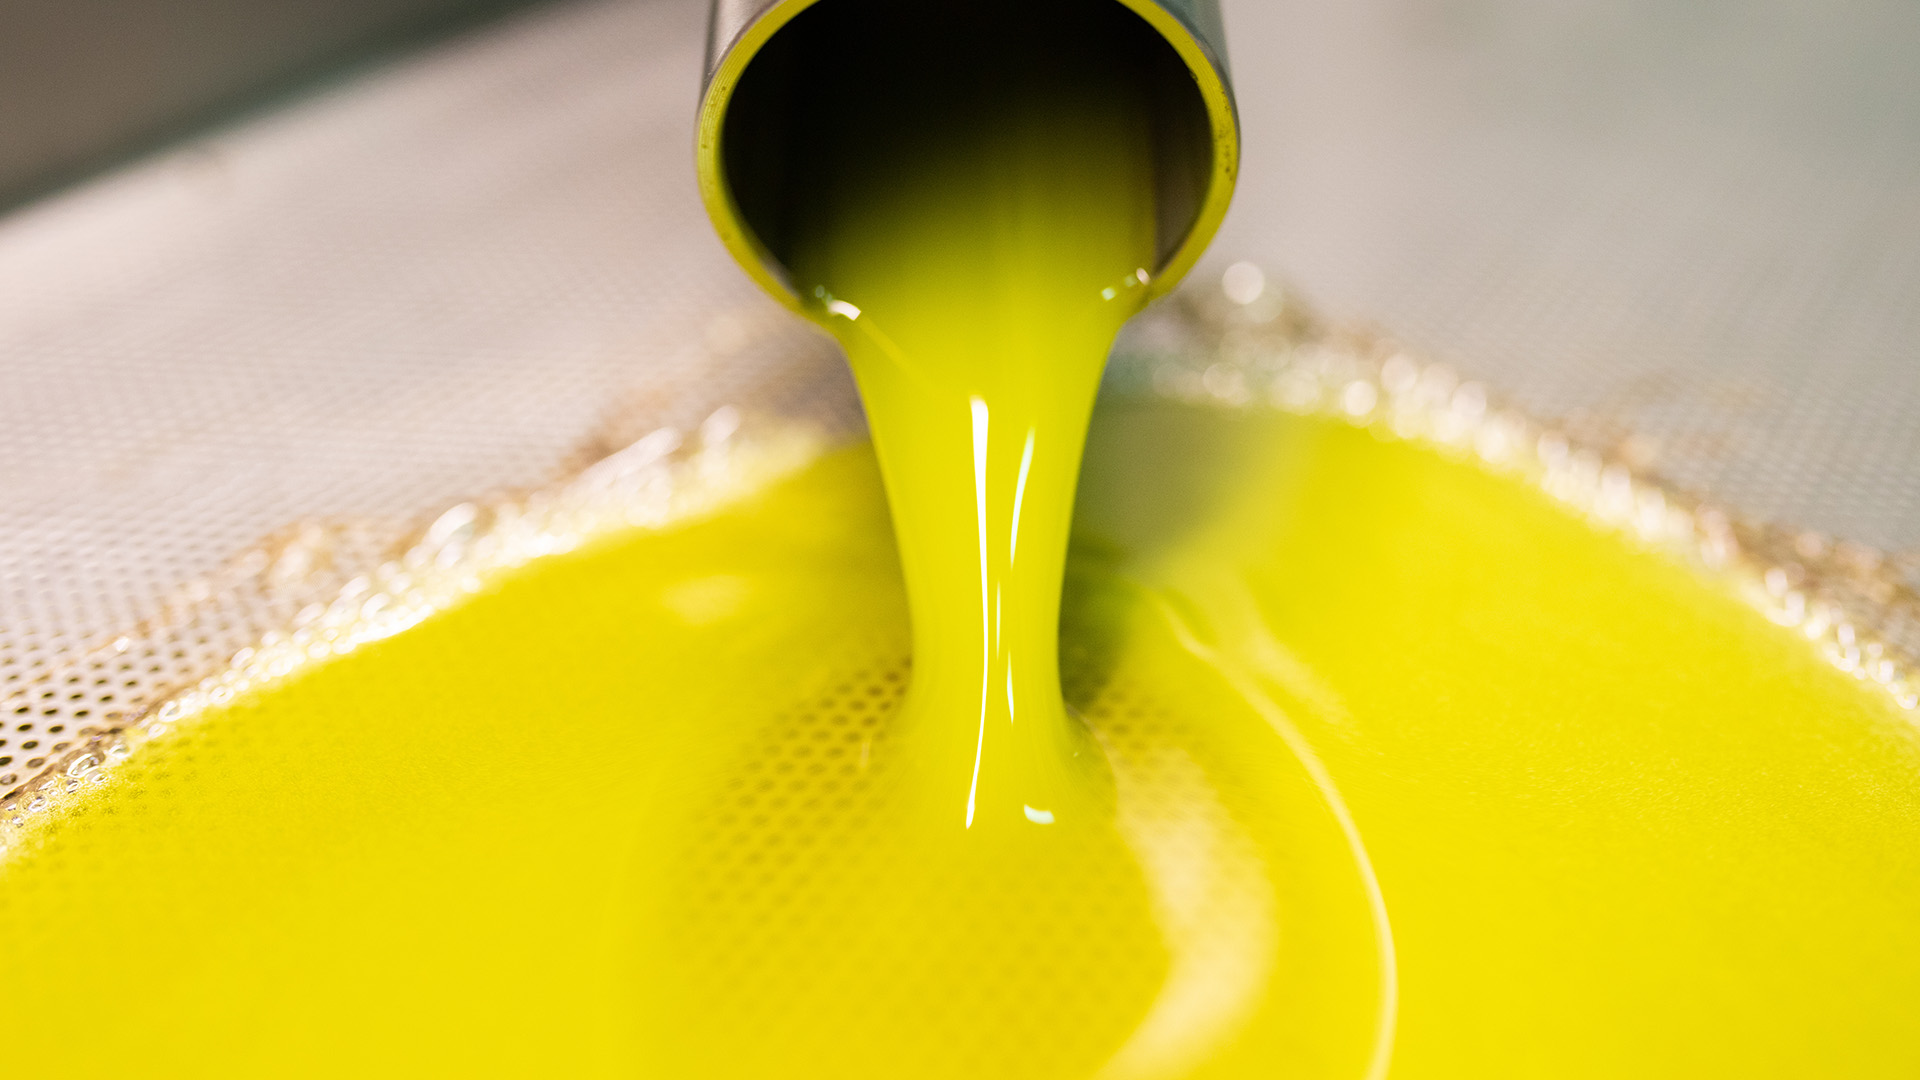 spremitura a freddo delle olive per olio extravergine